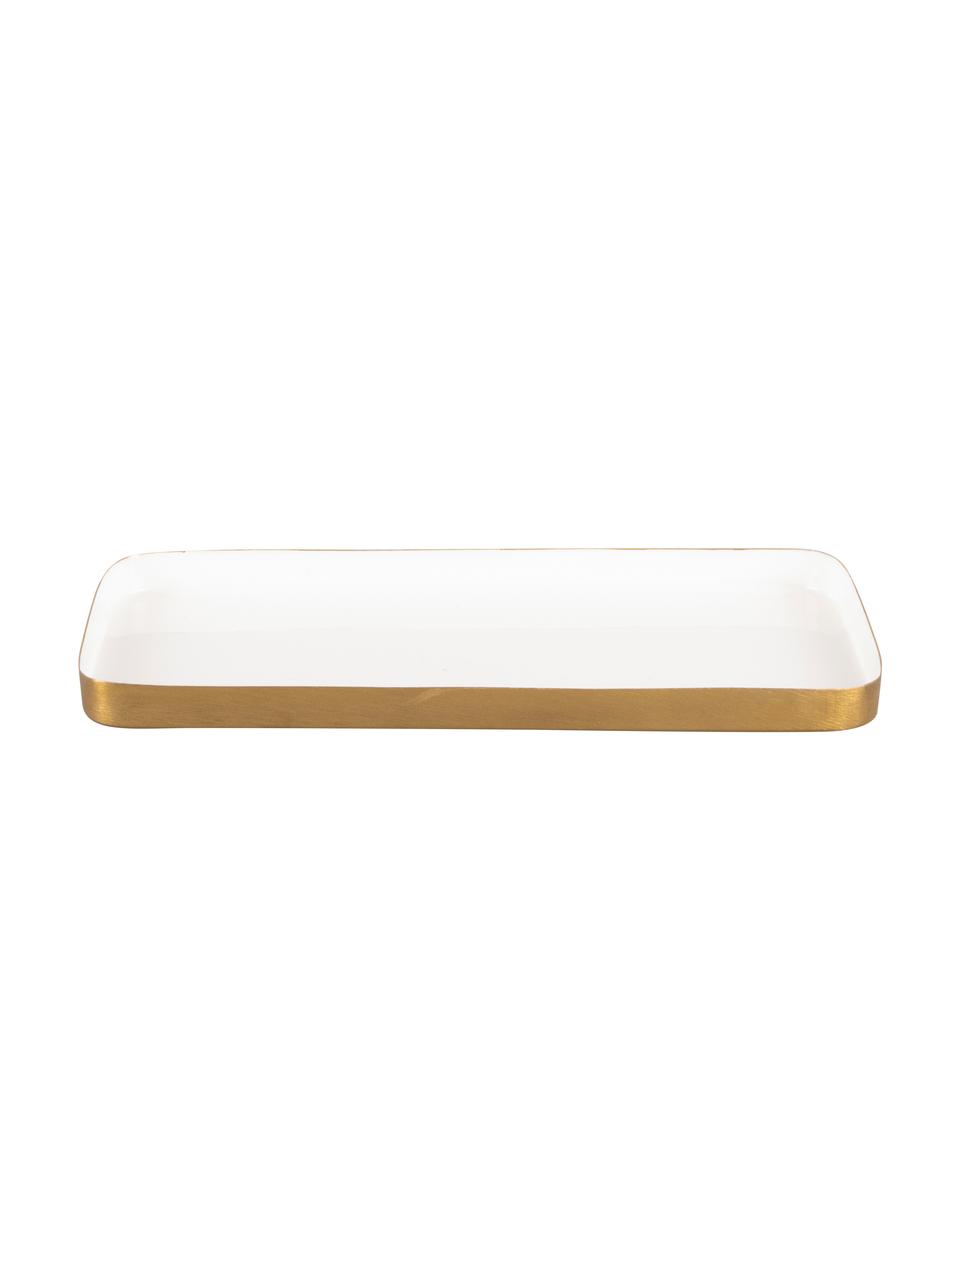 Decoratief dienblad Festive met glanzende oppervlak in wit, Gecoat metaal, Wit, goudkleurig, L 25 x B 13 cm